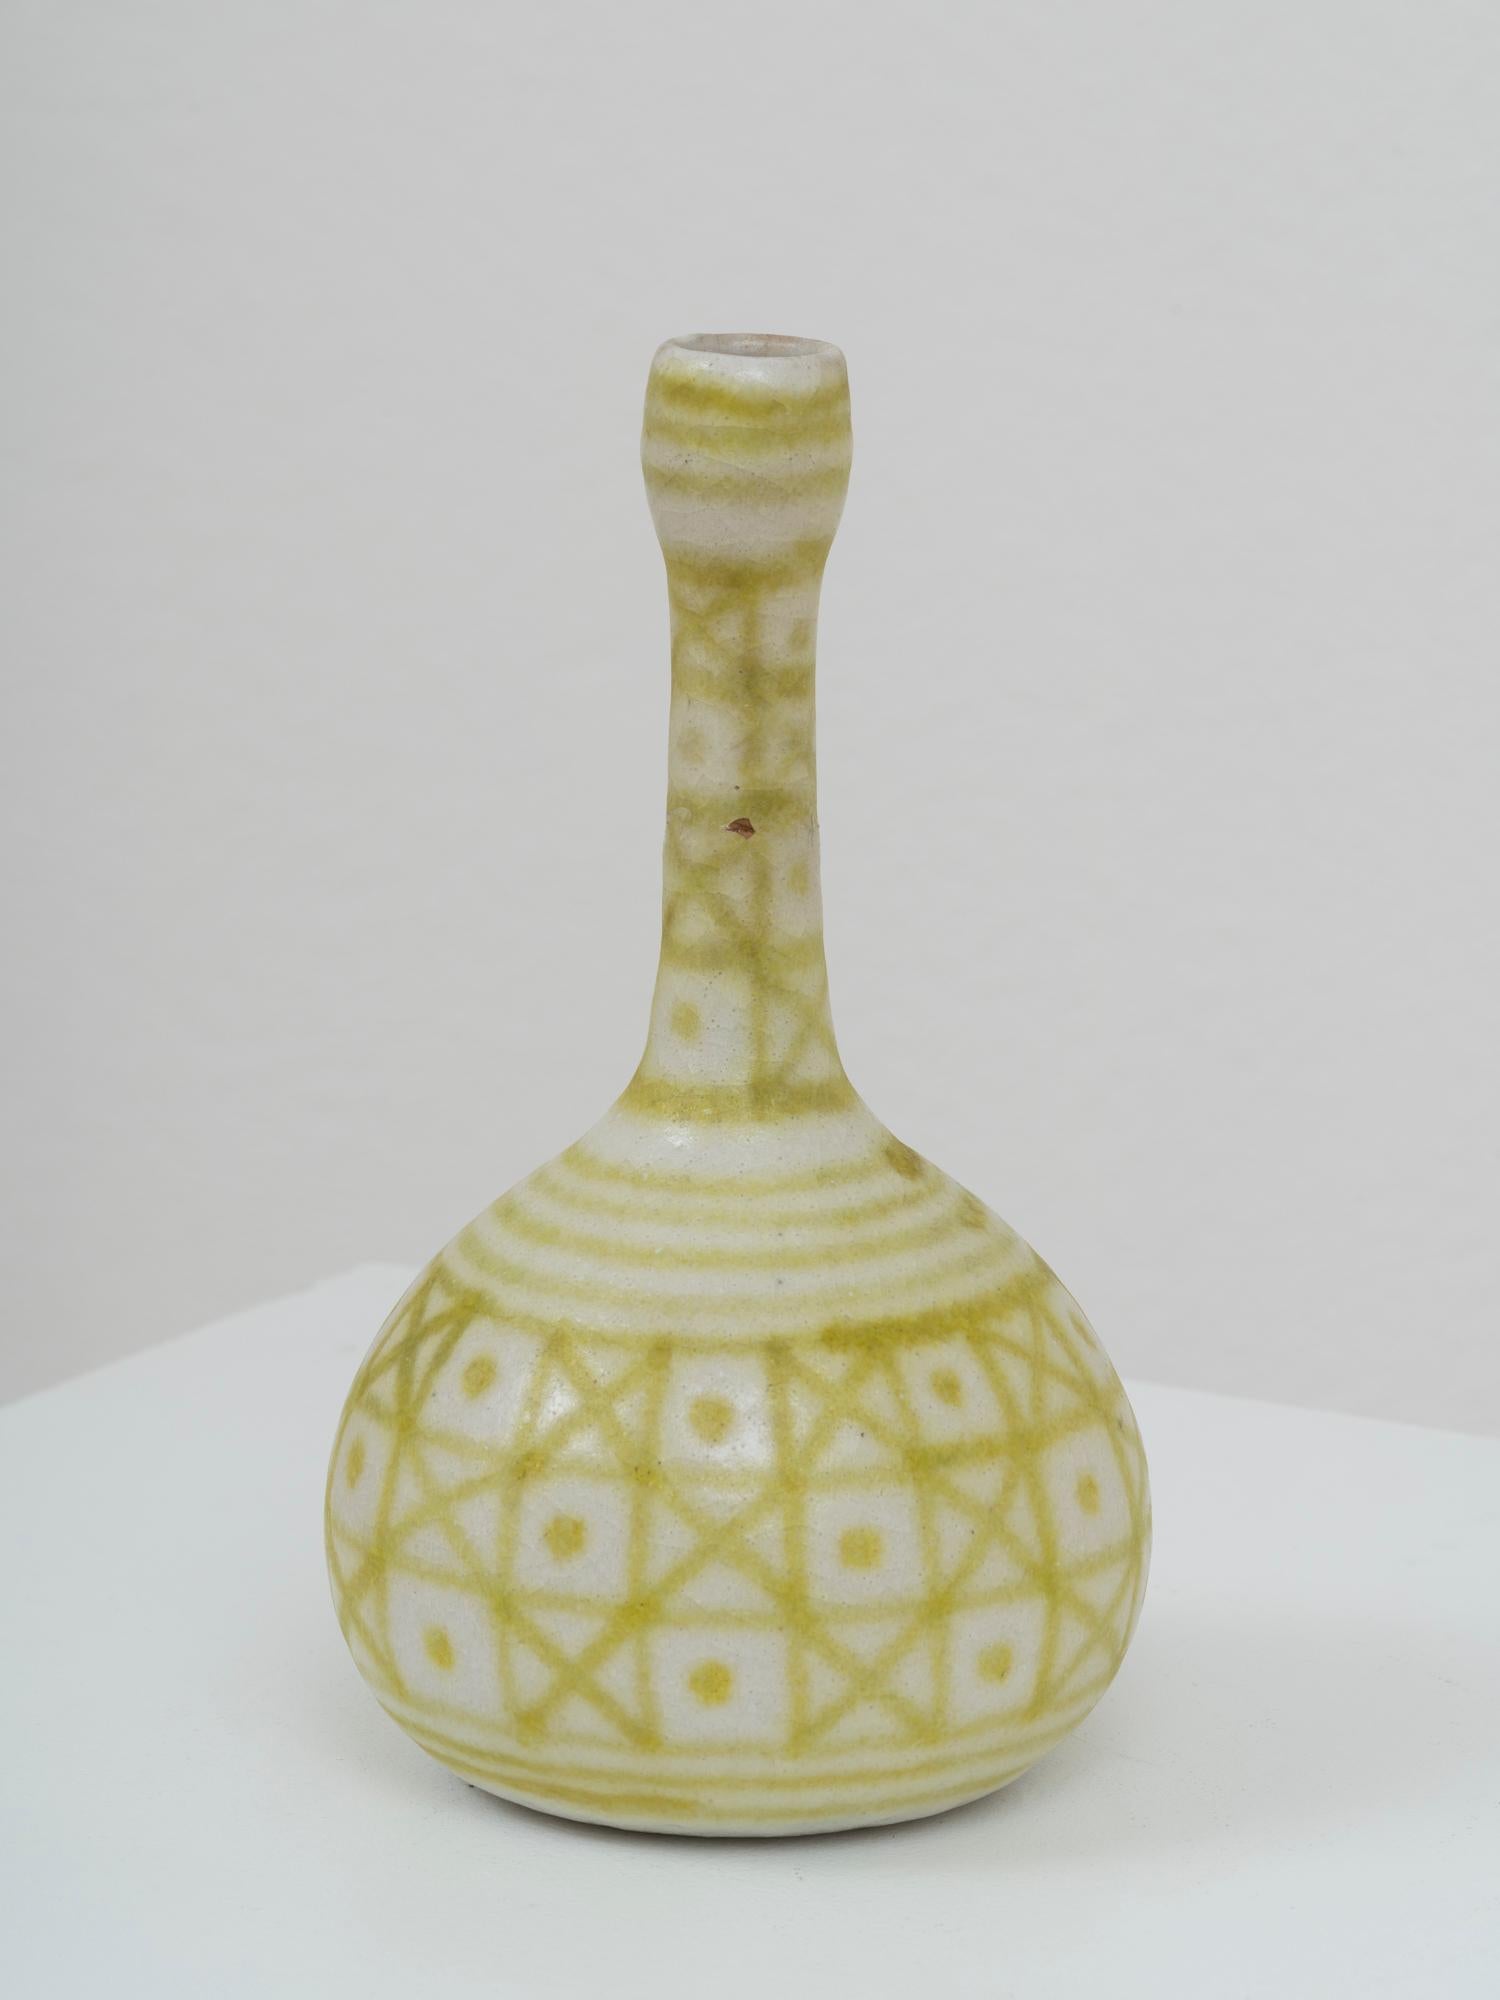 Vase emblématique du maître italien de la céramique Guido Icone, datant de sa période à la manufacture La Tirrena, active entre 1950 et 1967. Il est signé de son nom de famille et de l'emblématique marque de l'âne en bas. Ce vase présente un décor